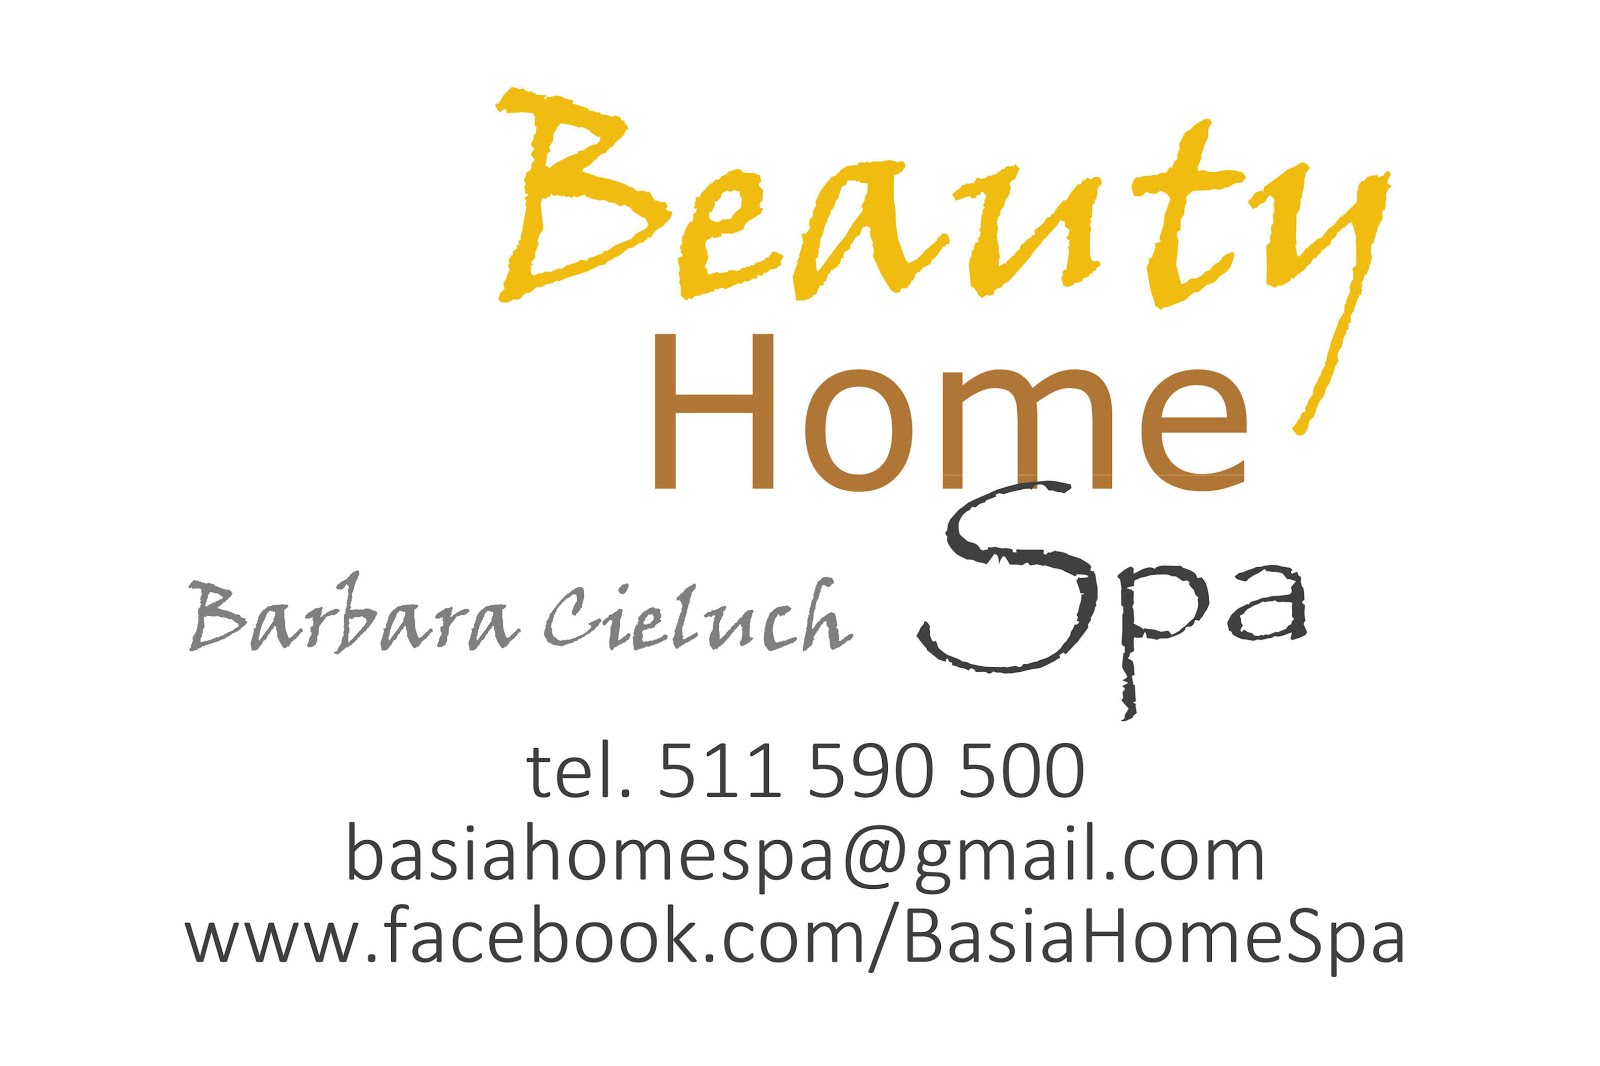 Beauty Home Spa